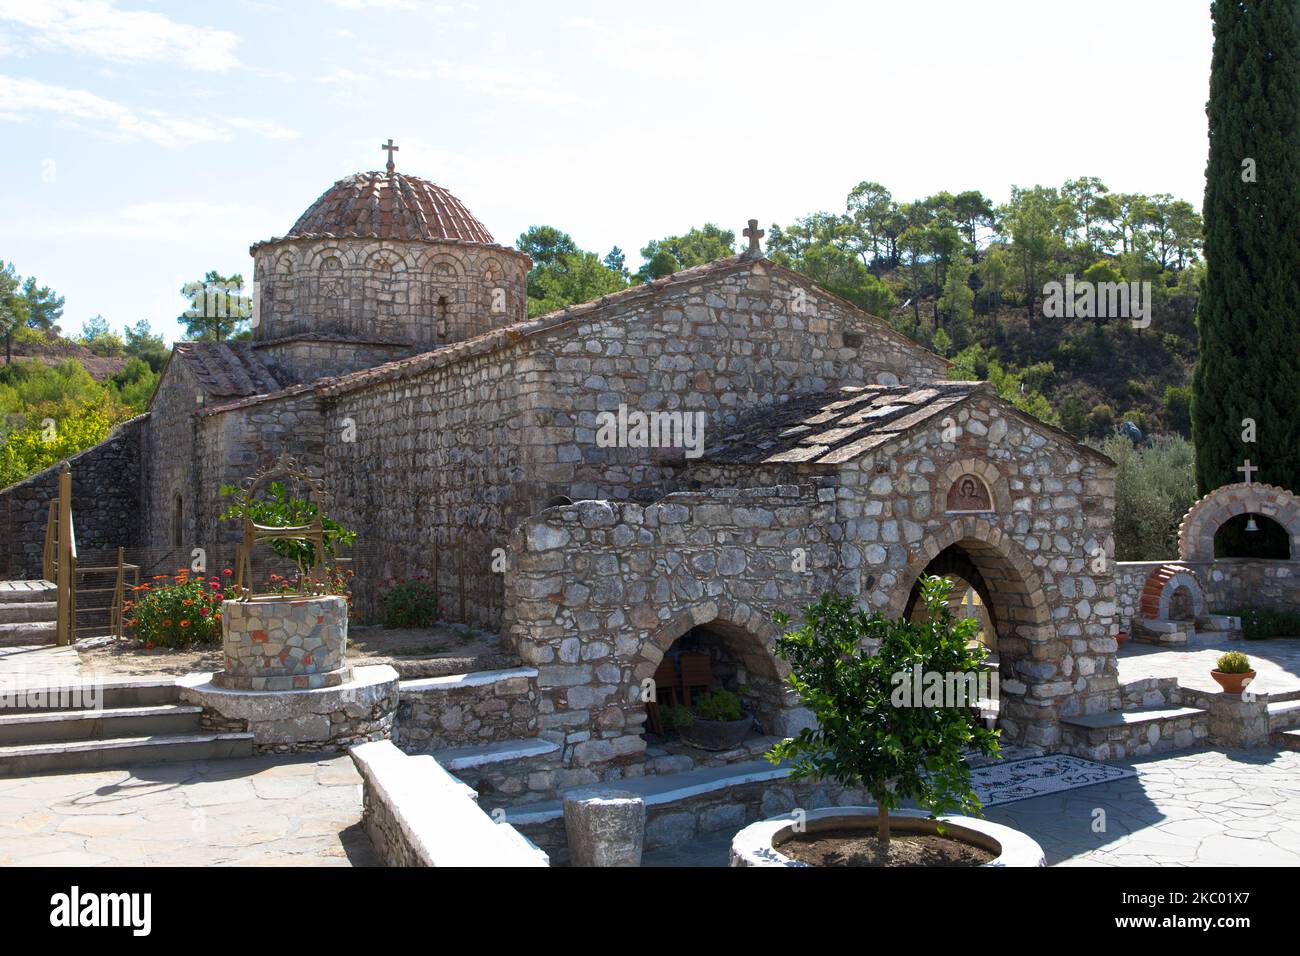 Das Kloster Moni Thari ist eines der wichtigsten religiösen Denkmäler auf der Insel Rhodos. Laerma, Rhodos, Dodekanes, Südägäis, Griechenland Stockfoto